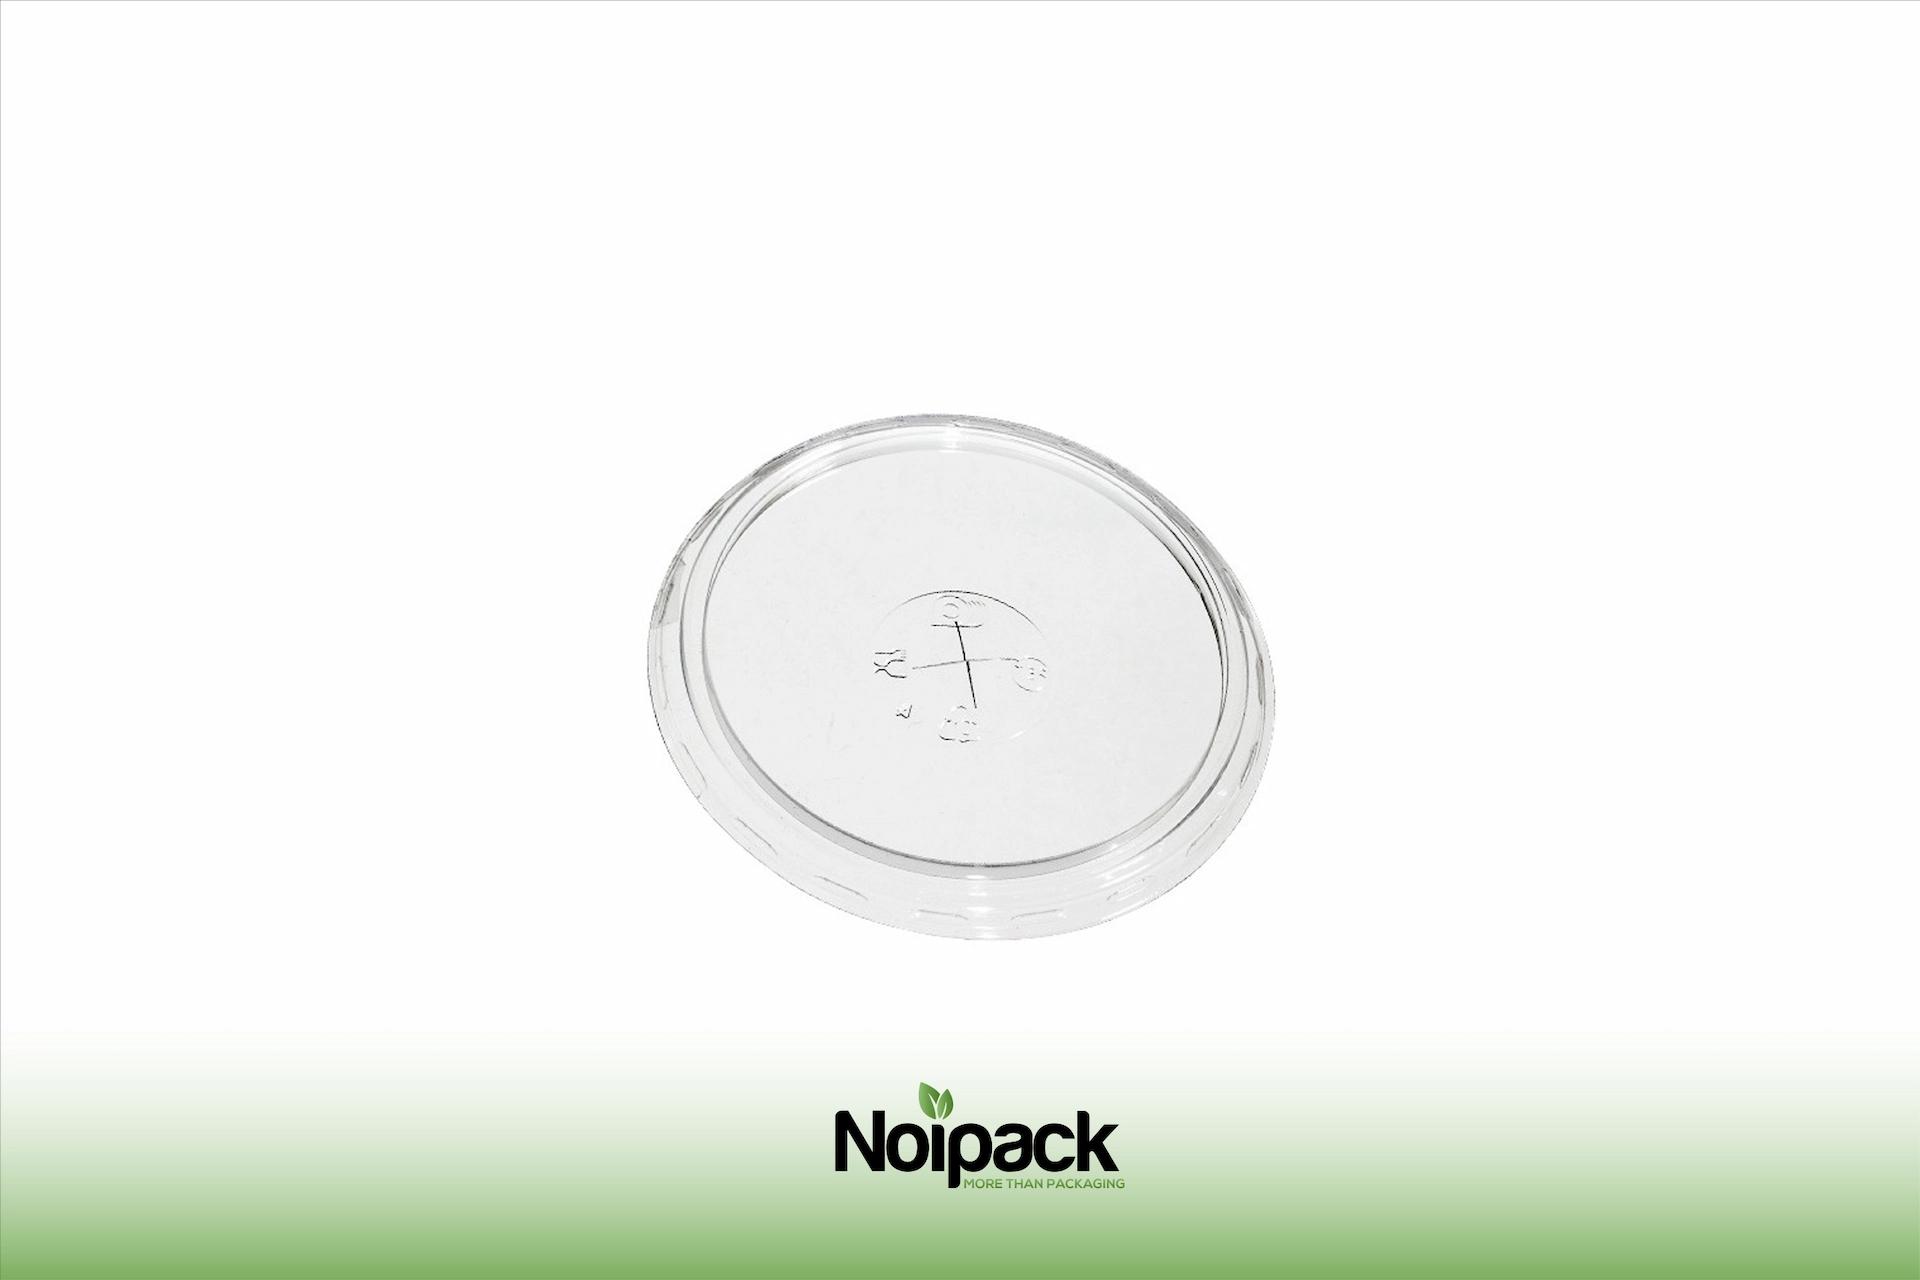 Noipack flat lid 300-400ml rPET